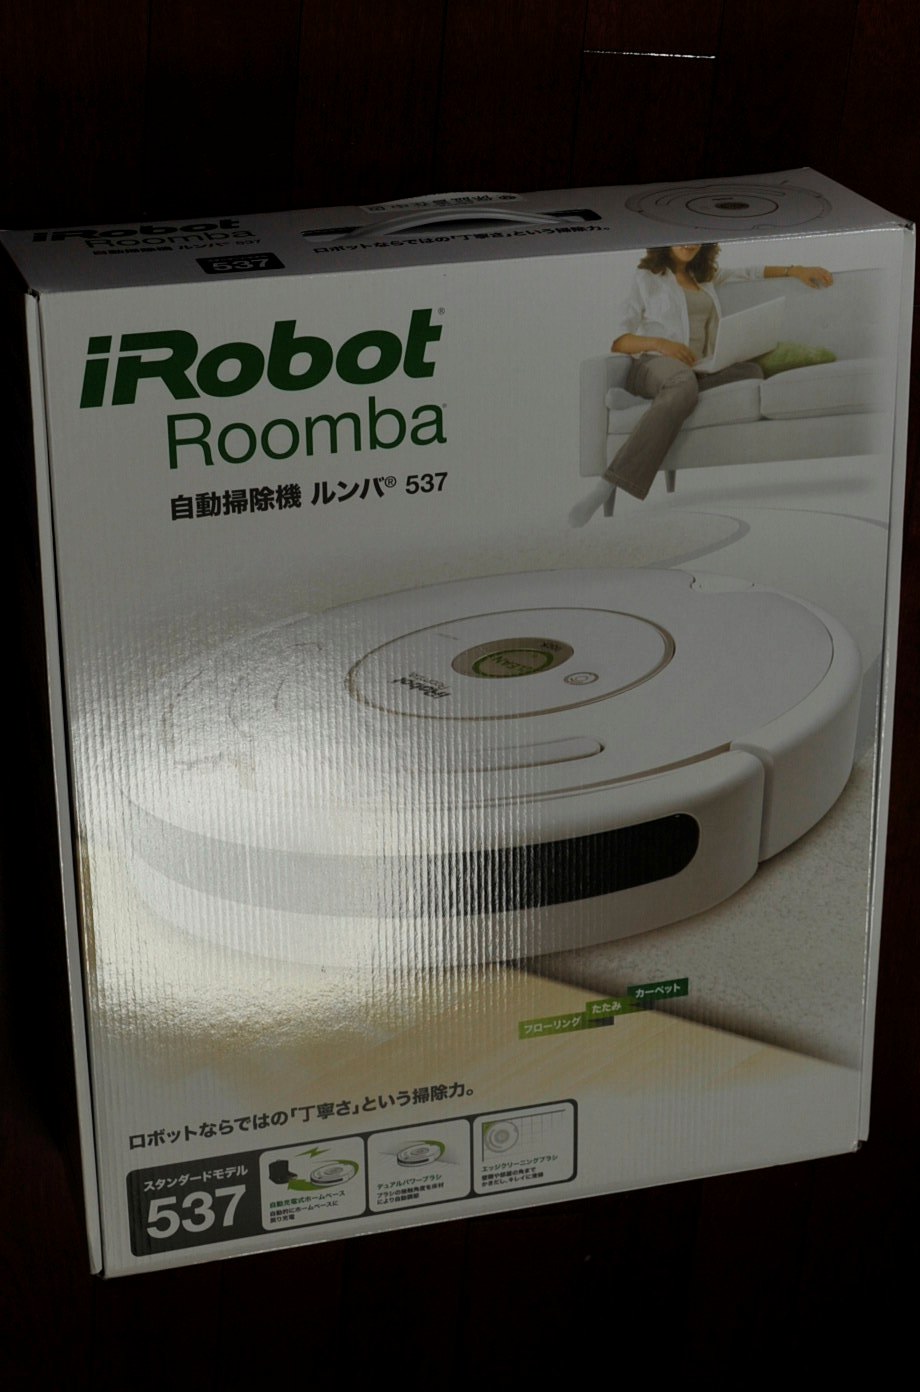 iROBOT自動掃除機ルンバ、来る - こんな感じで。